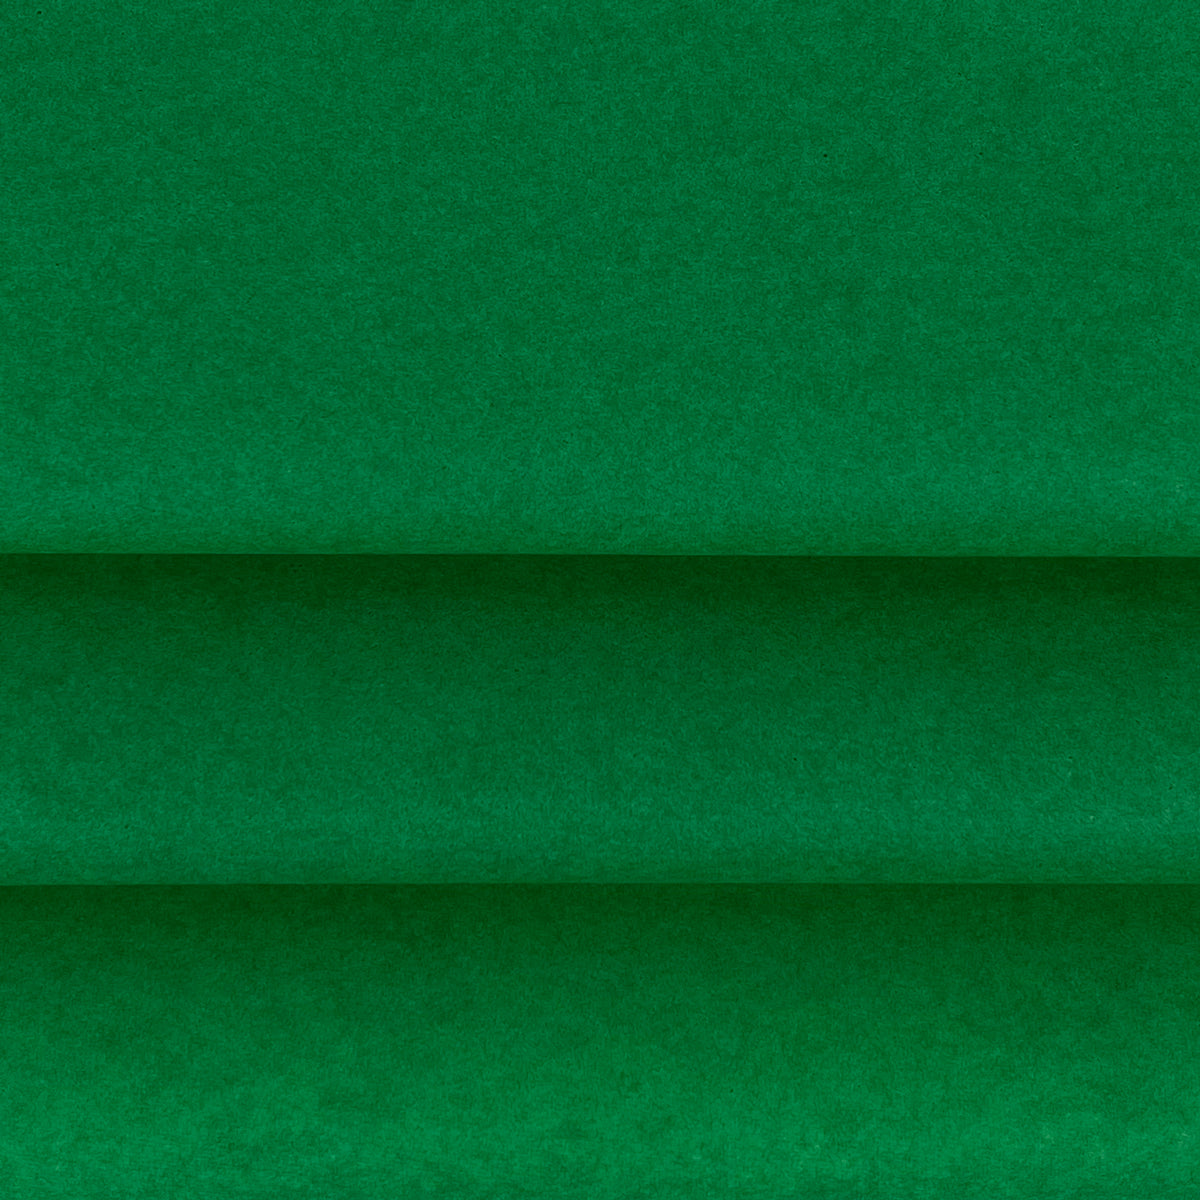 Vloeipapier kleur Groen